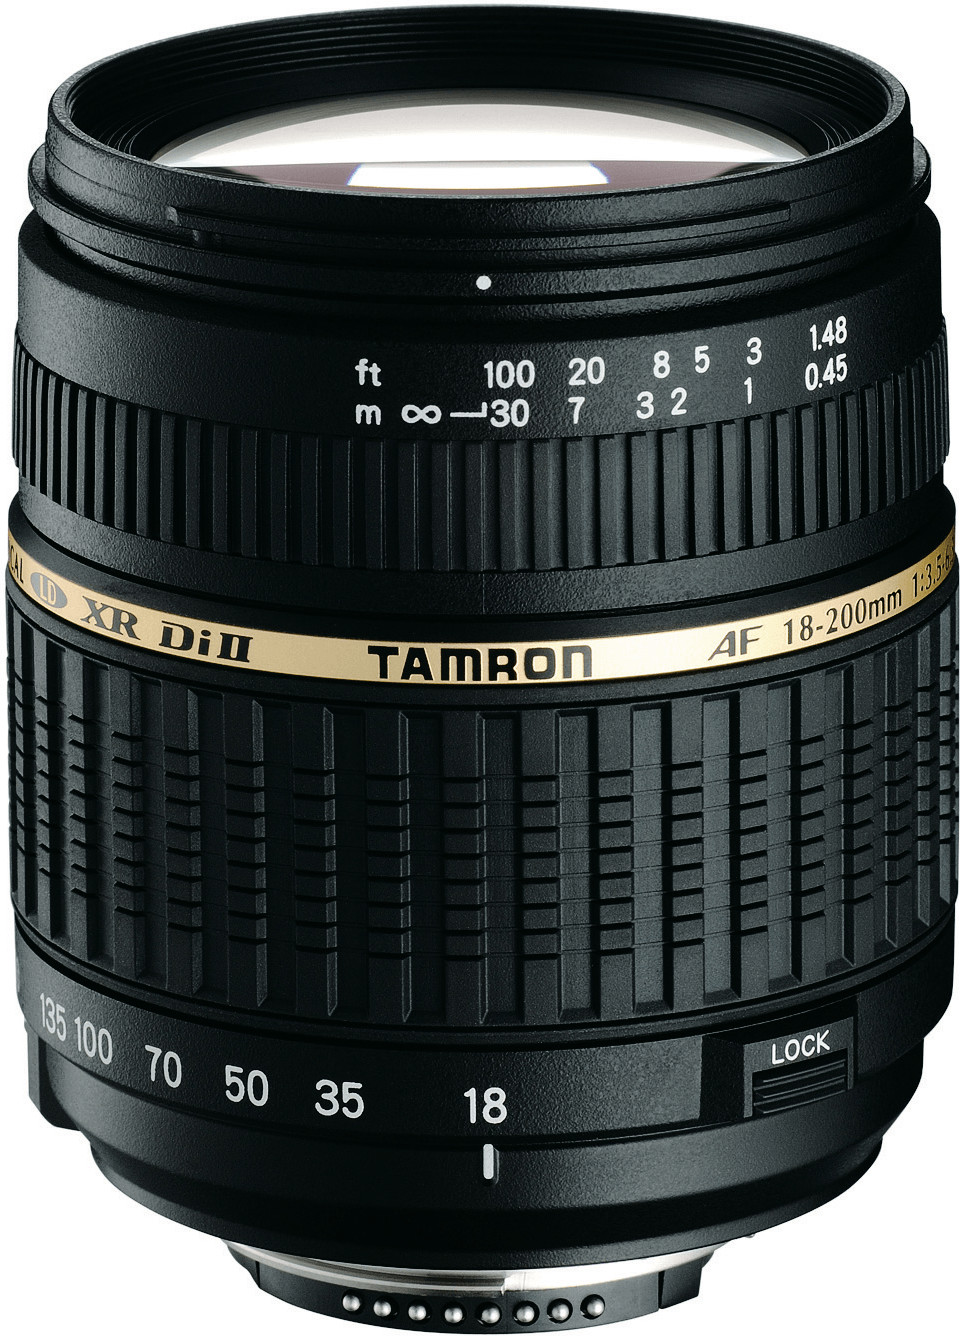 Tamron AF 18-200mm f3.5-6.3 XR Di II LD IF Macro Canon a € 250,00 (oggi